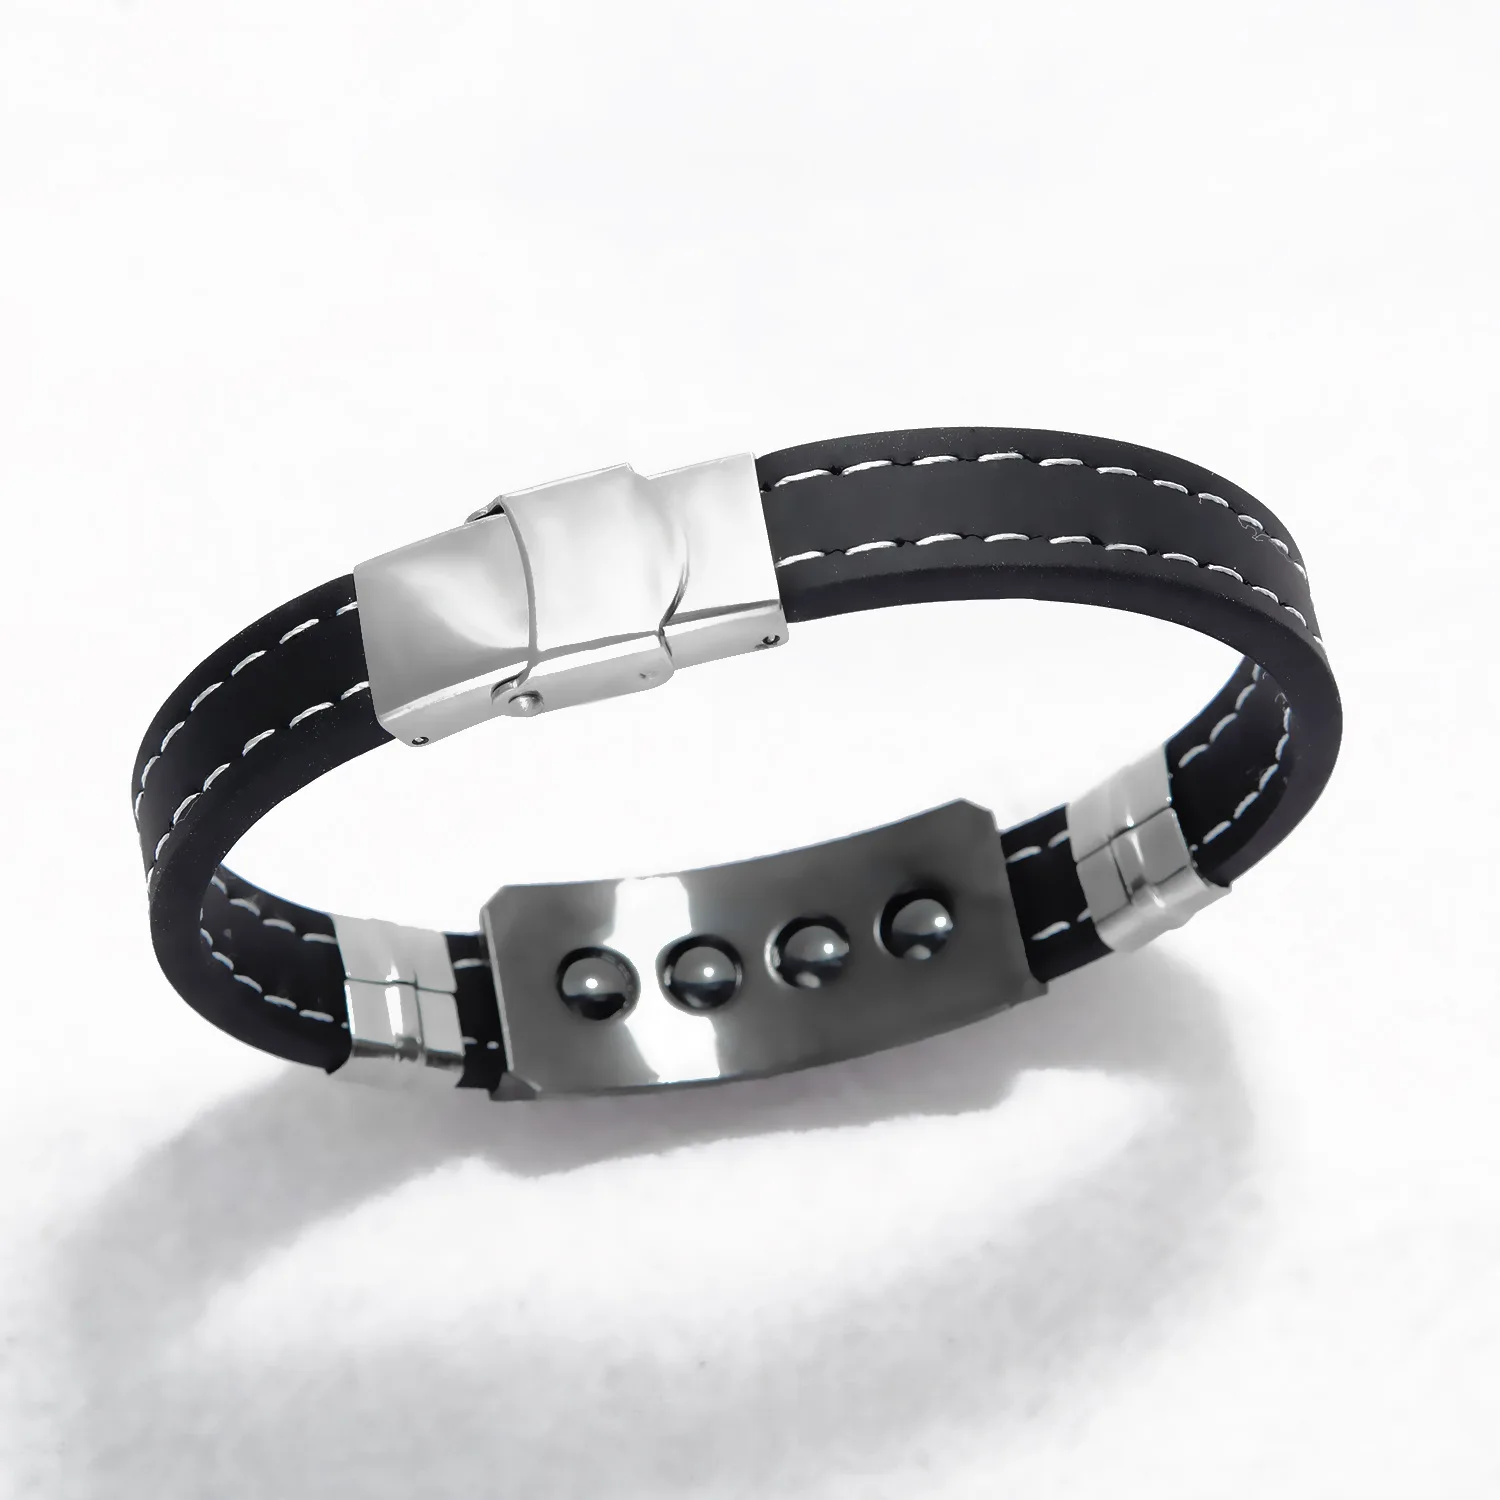 DIY пользовательский браслет с гравировкой силиконовый Magent Камень Здоровья Браслеты для мужчин персонализированные браслеты ювелирные изделия